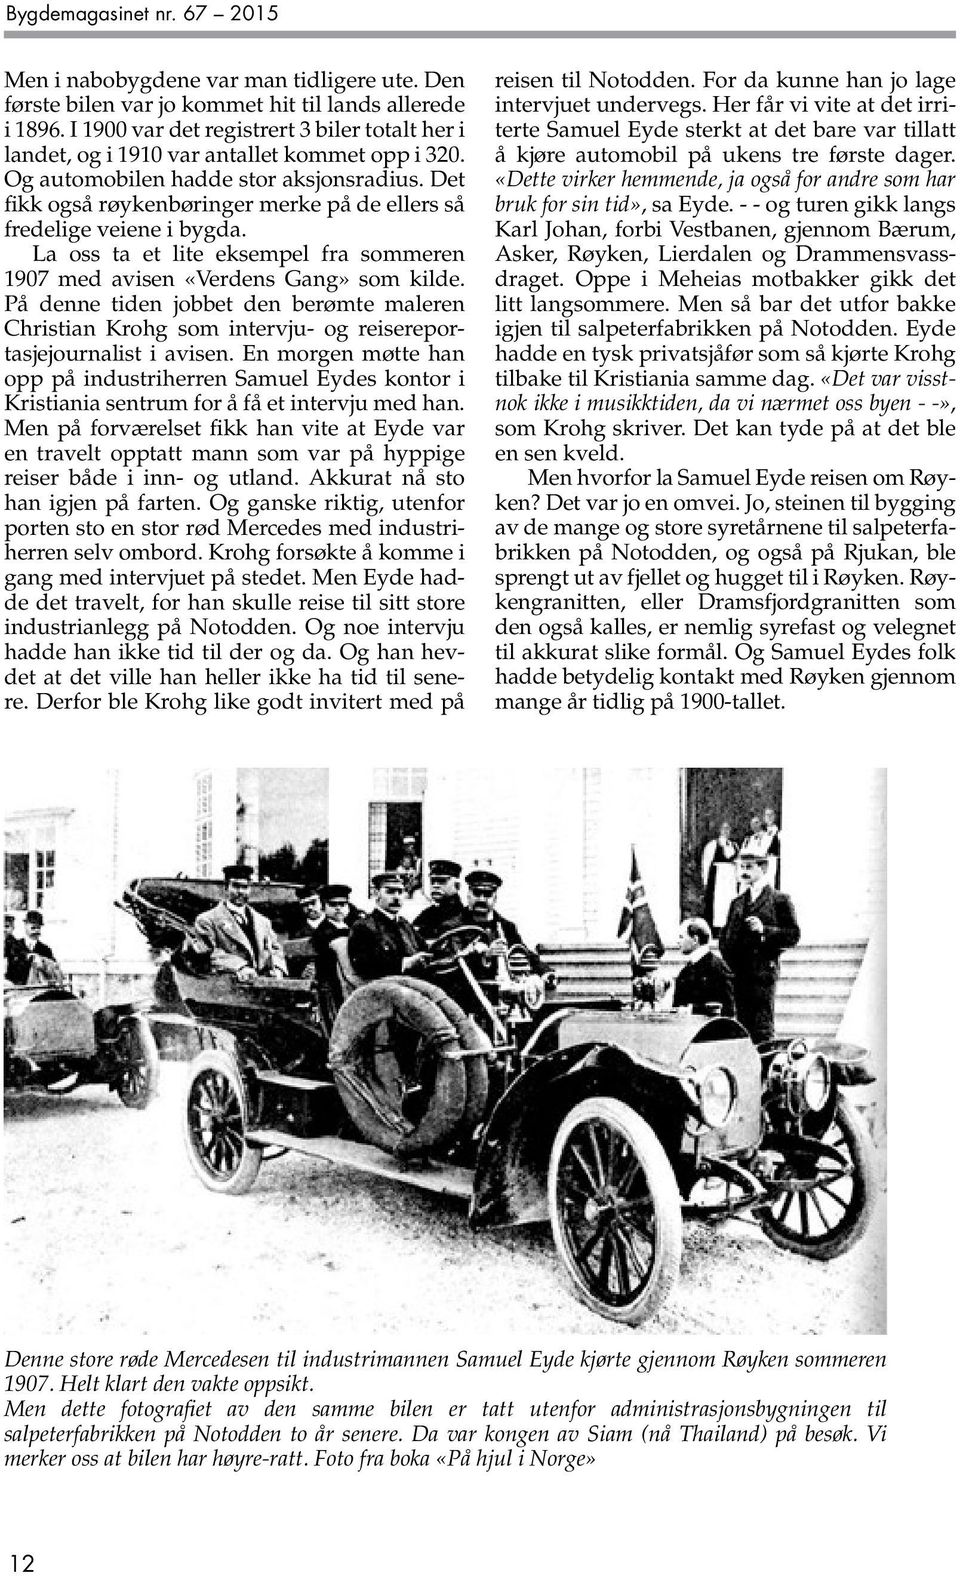 Det fikk også røykenbøringer merke på de ellers så fredelige veiene i bygda. La oss ta et lite eksempel fra sommeren 1907 med avisen «Verdens Gang» som kilde.